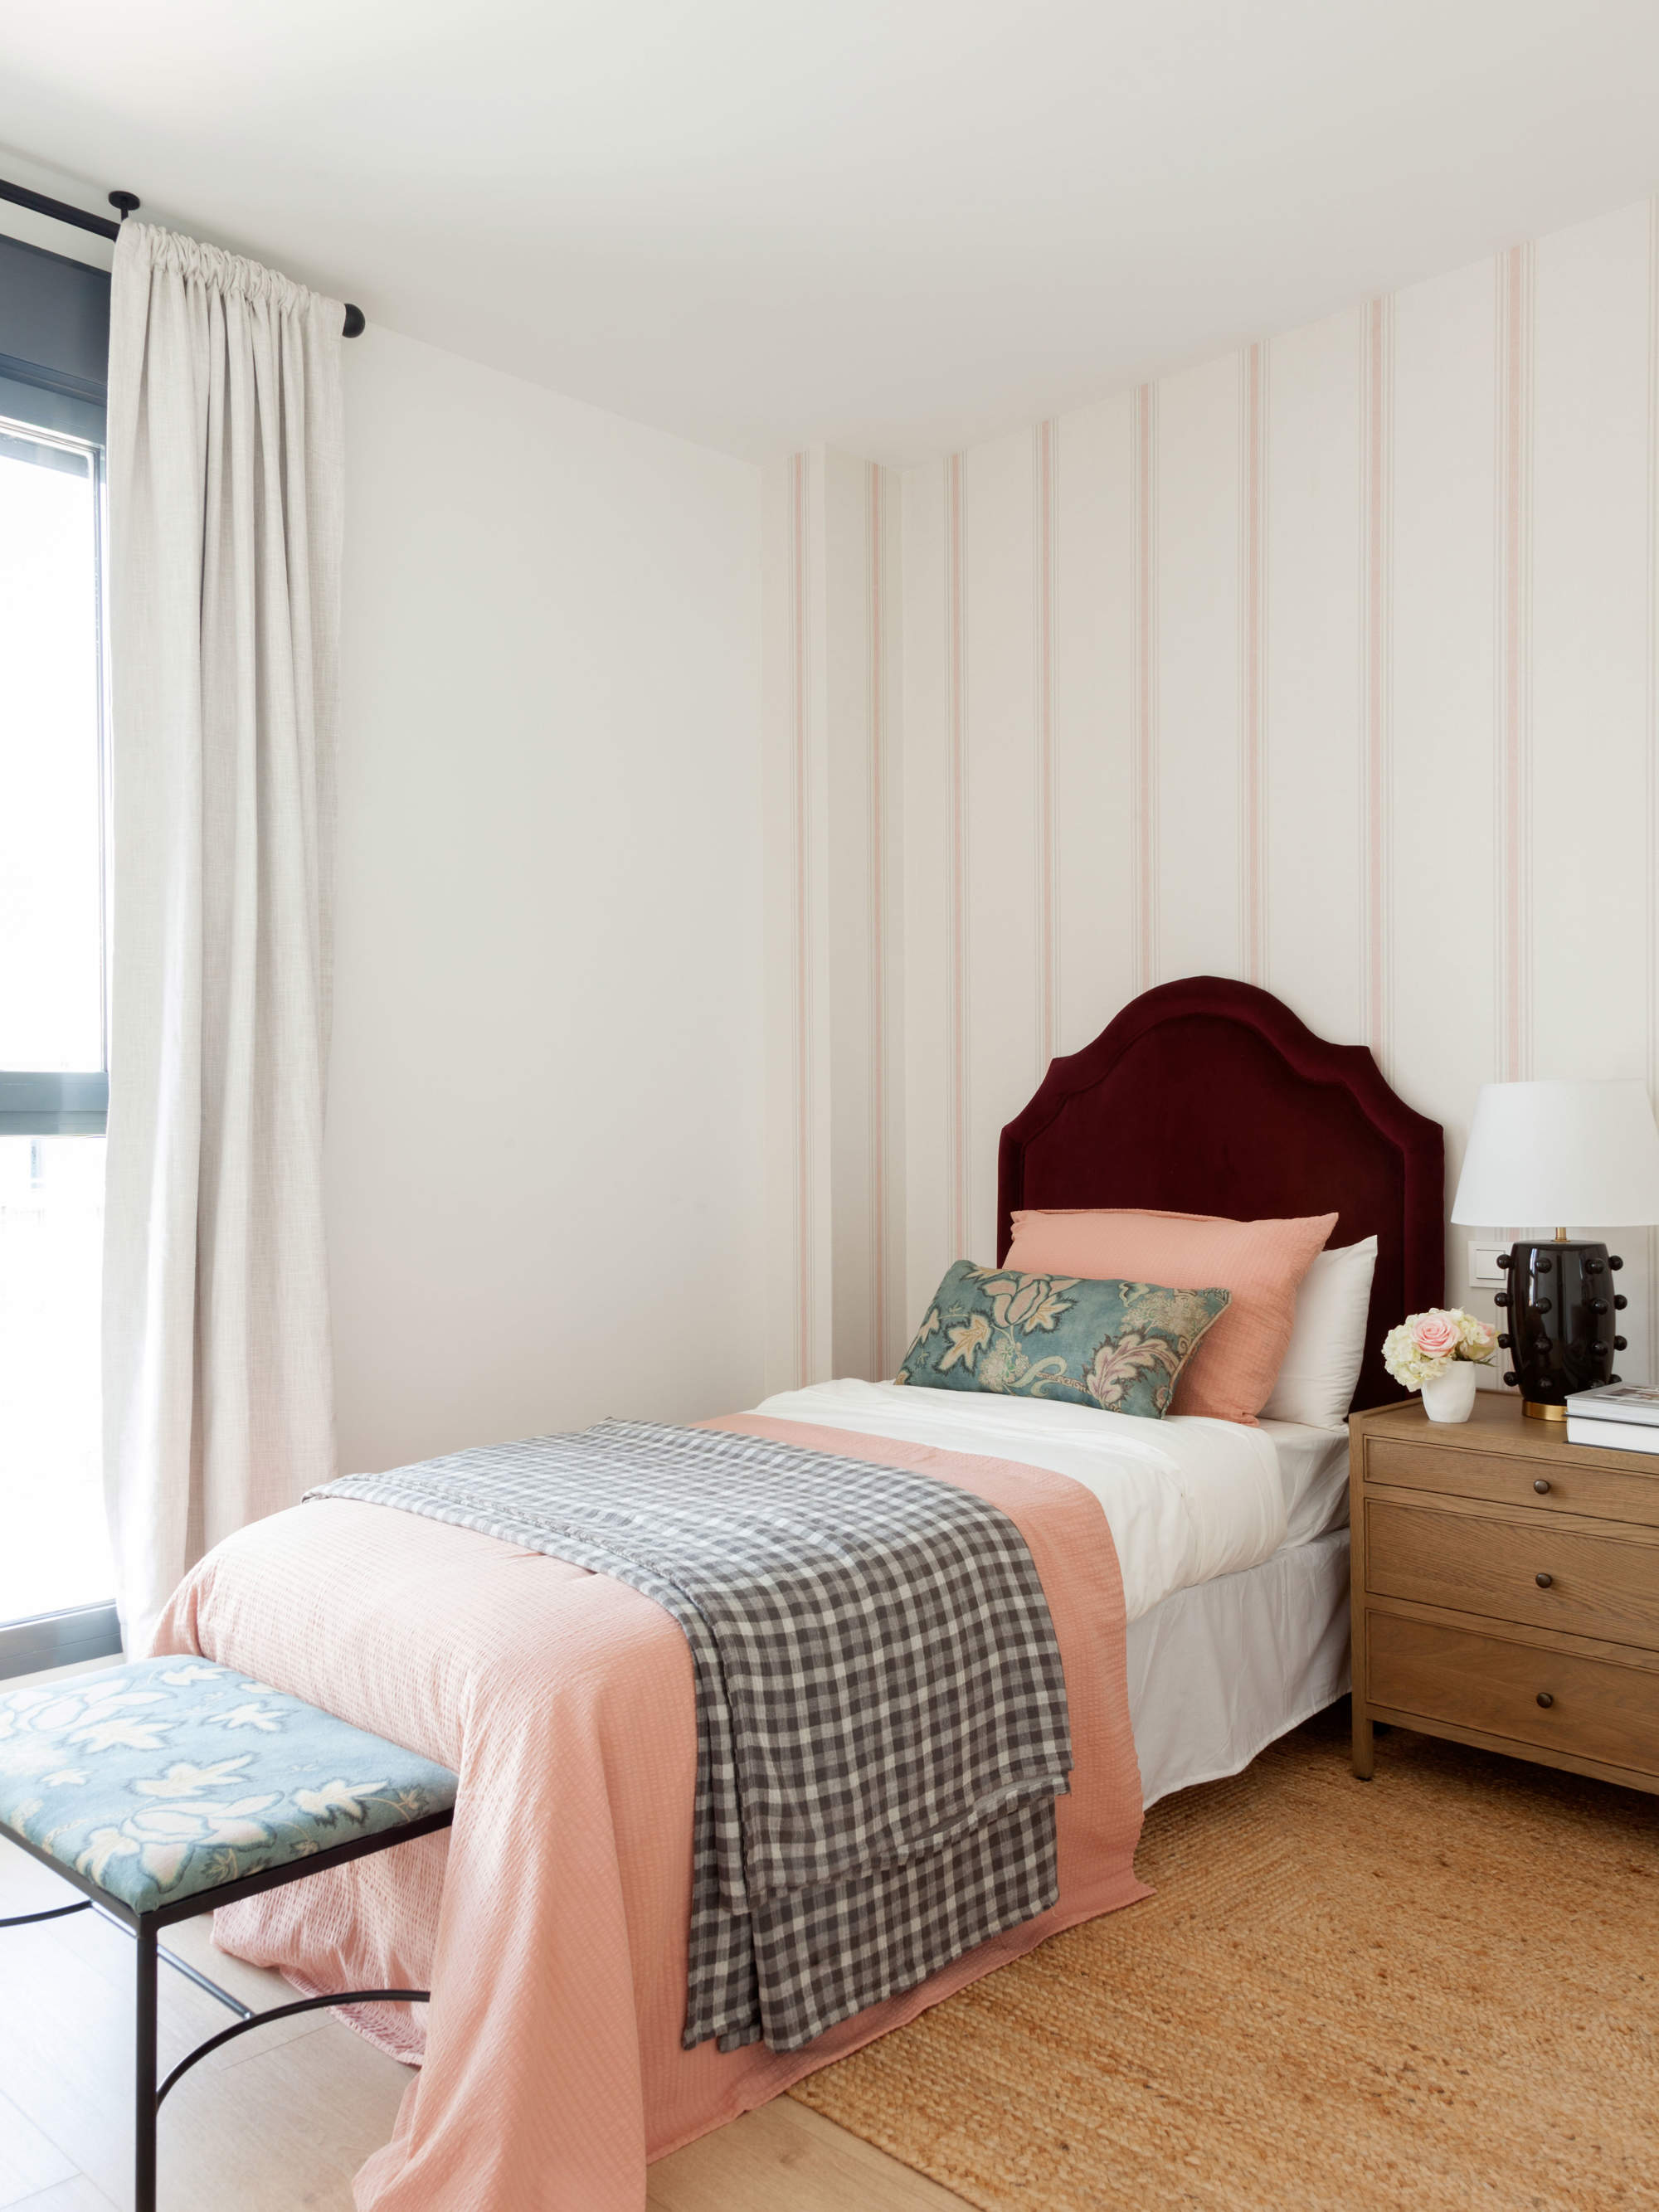 Dormitorio clásico con tonos rosas muy coqueto.